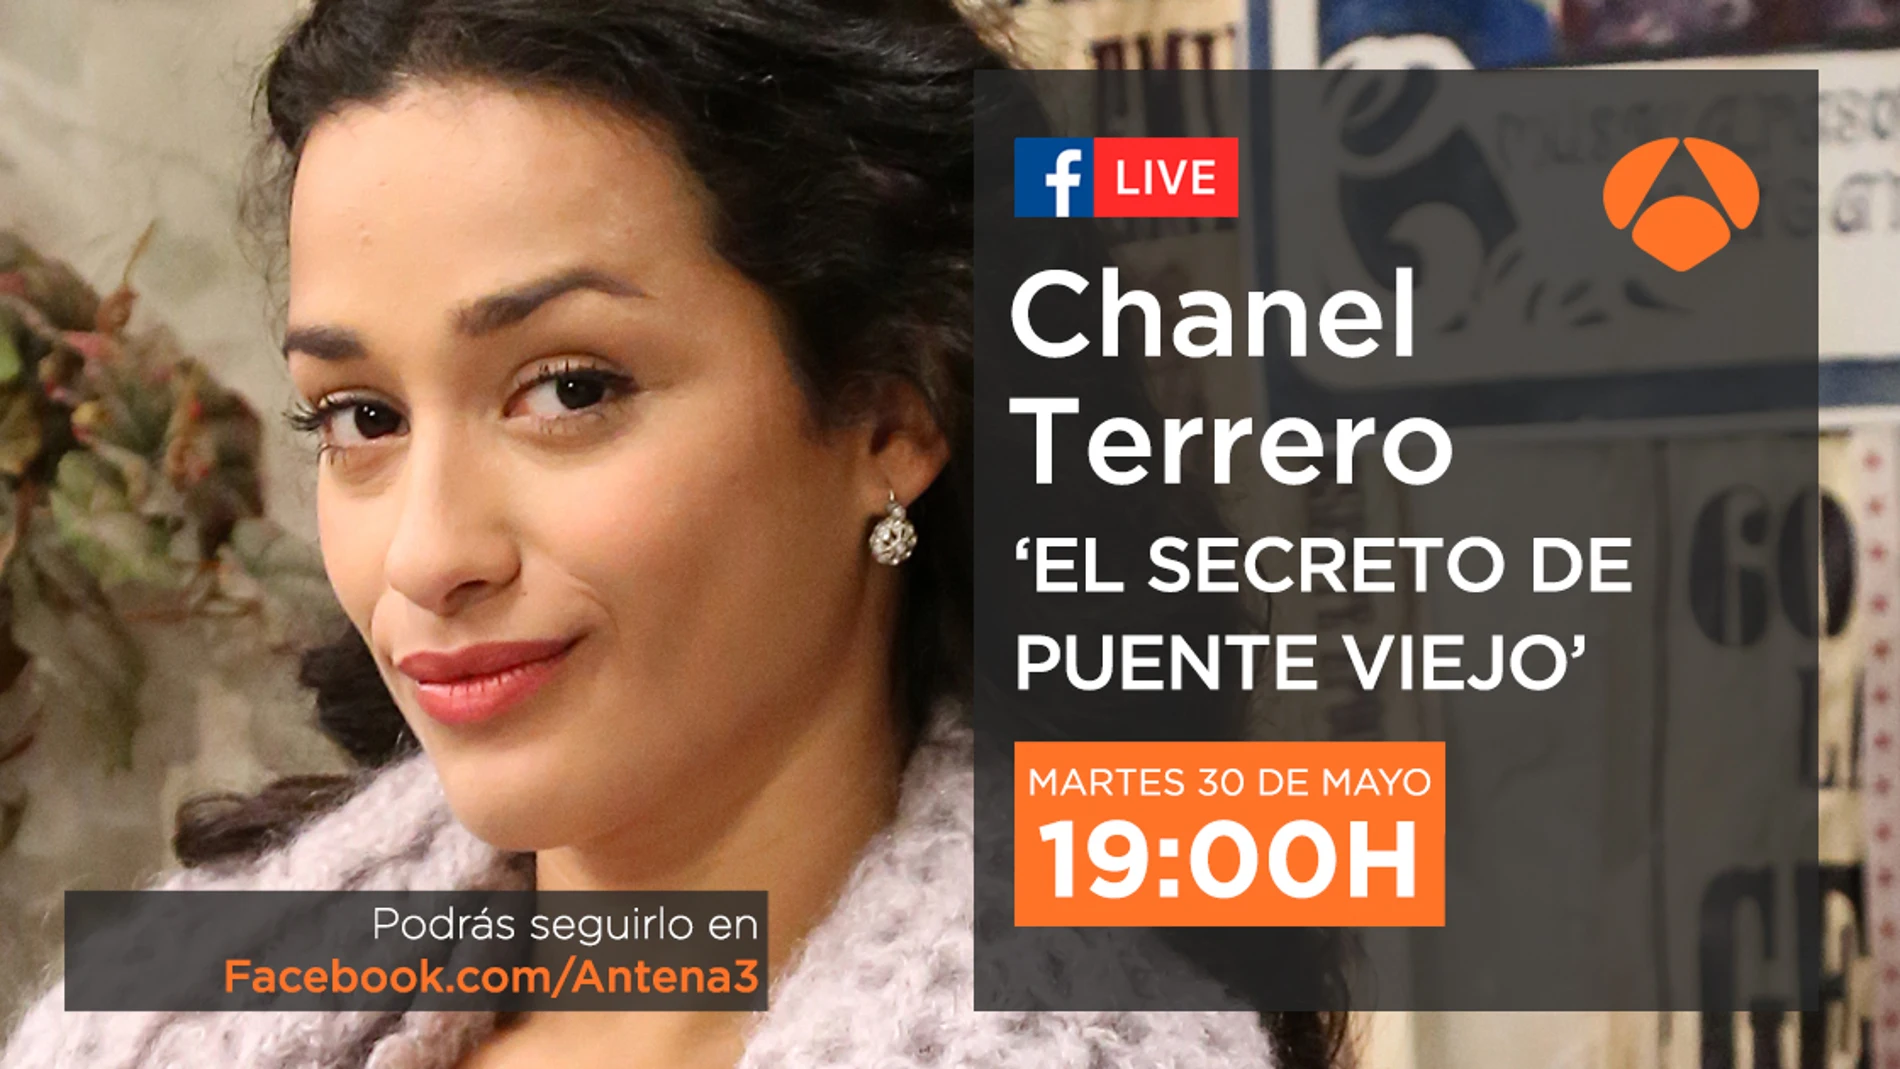 Chanel Terrero, Lucía en Puente Viejo, estará mañana en directo con todos los seguidores de la serie